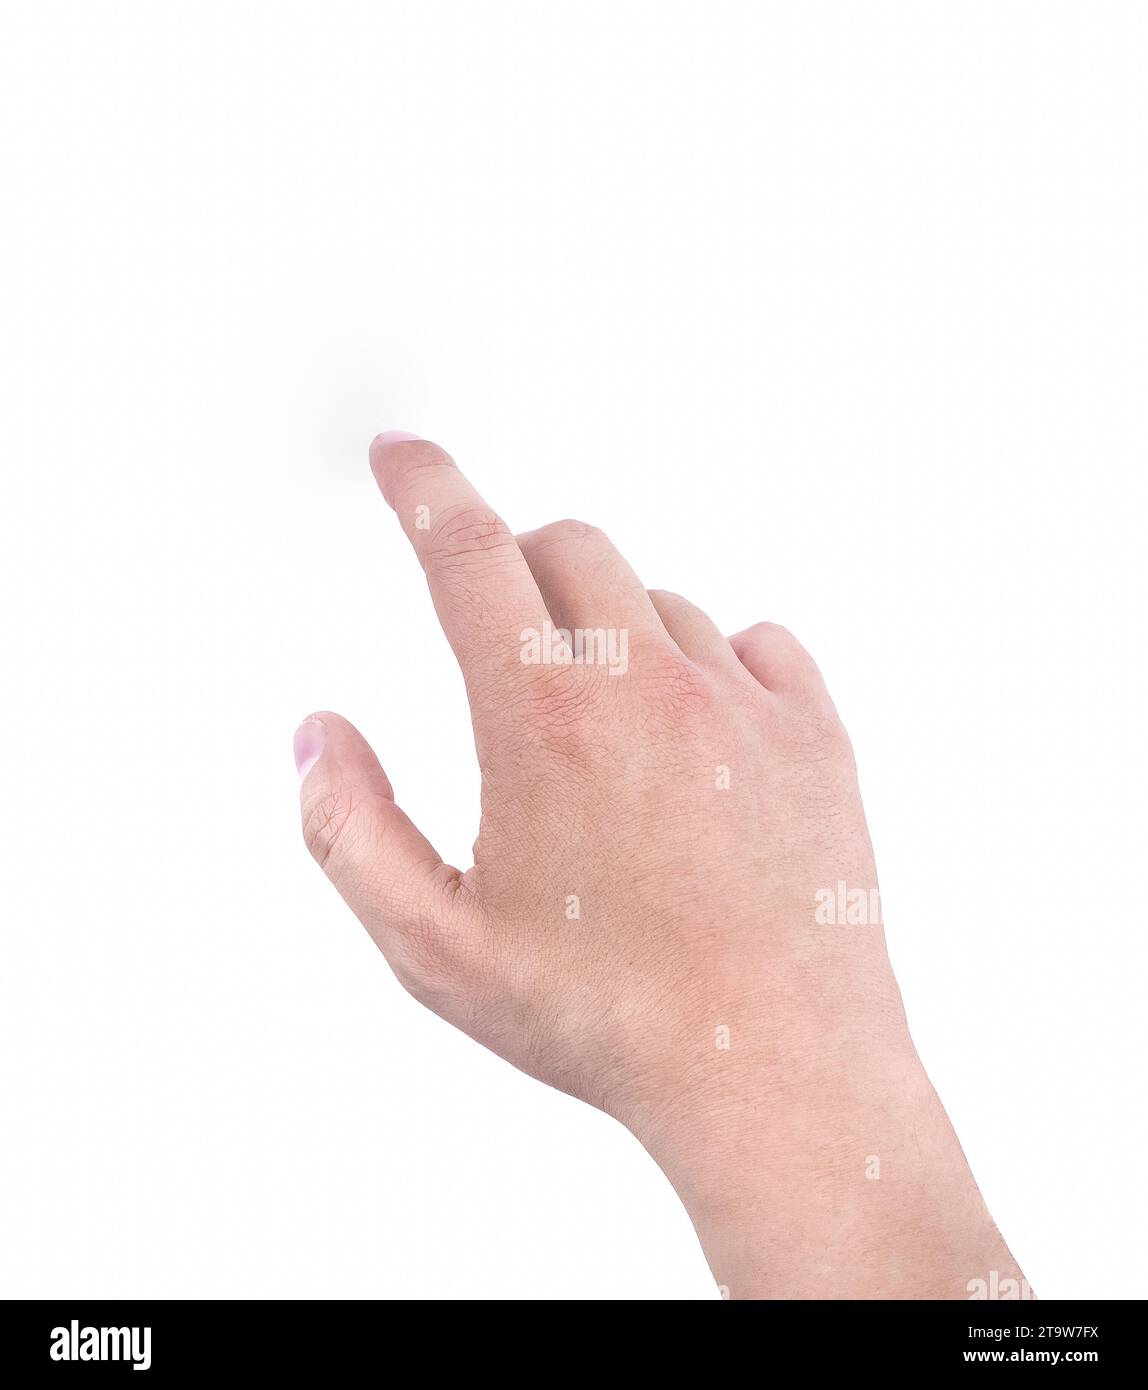 mains d'un homme montrant l'index sur fond blanc, symbole de main signe concept d'écran tactile Banque D'Images